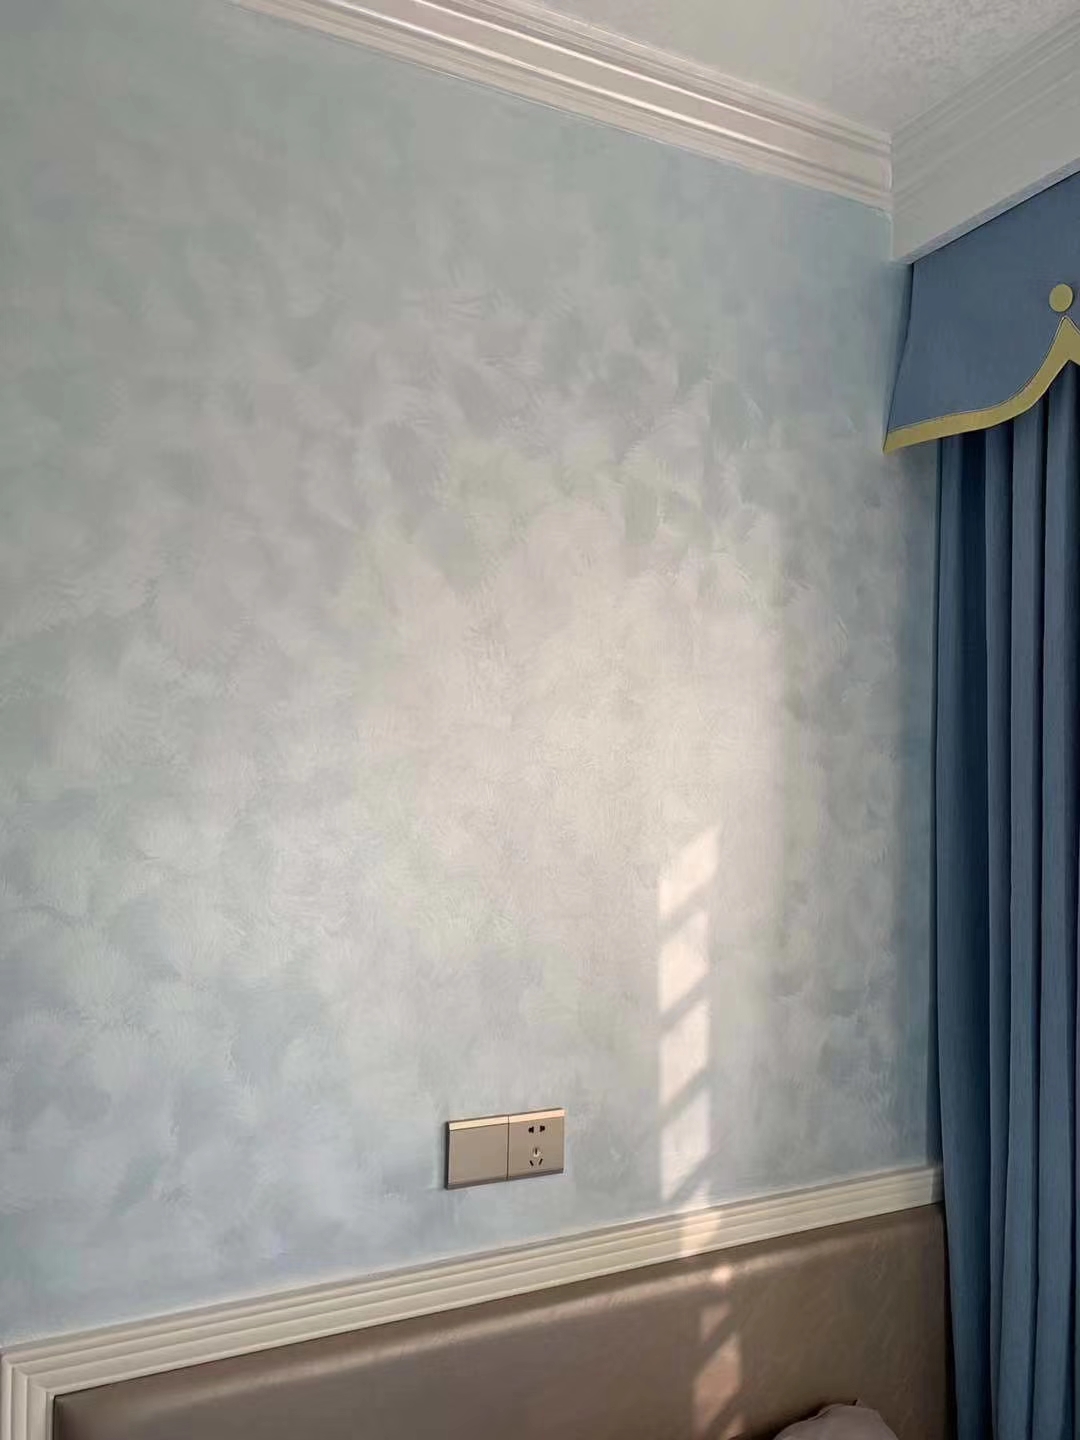 蒂威仕艺术涂料是一款新型墙面装饰壁材,在施工过程中,将材料,工艺